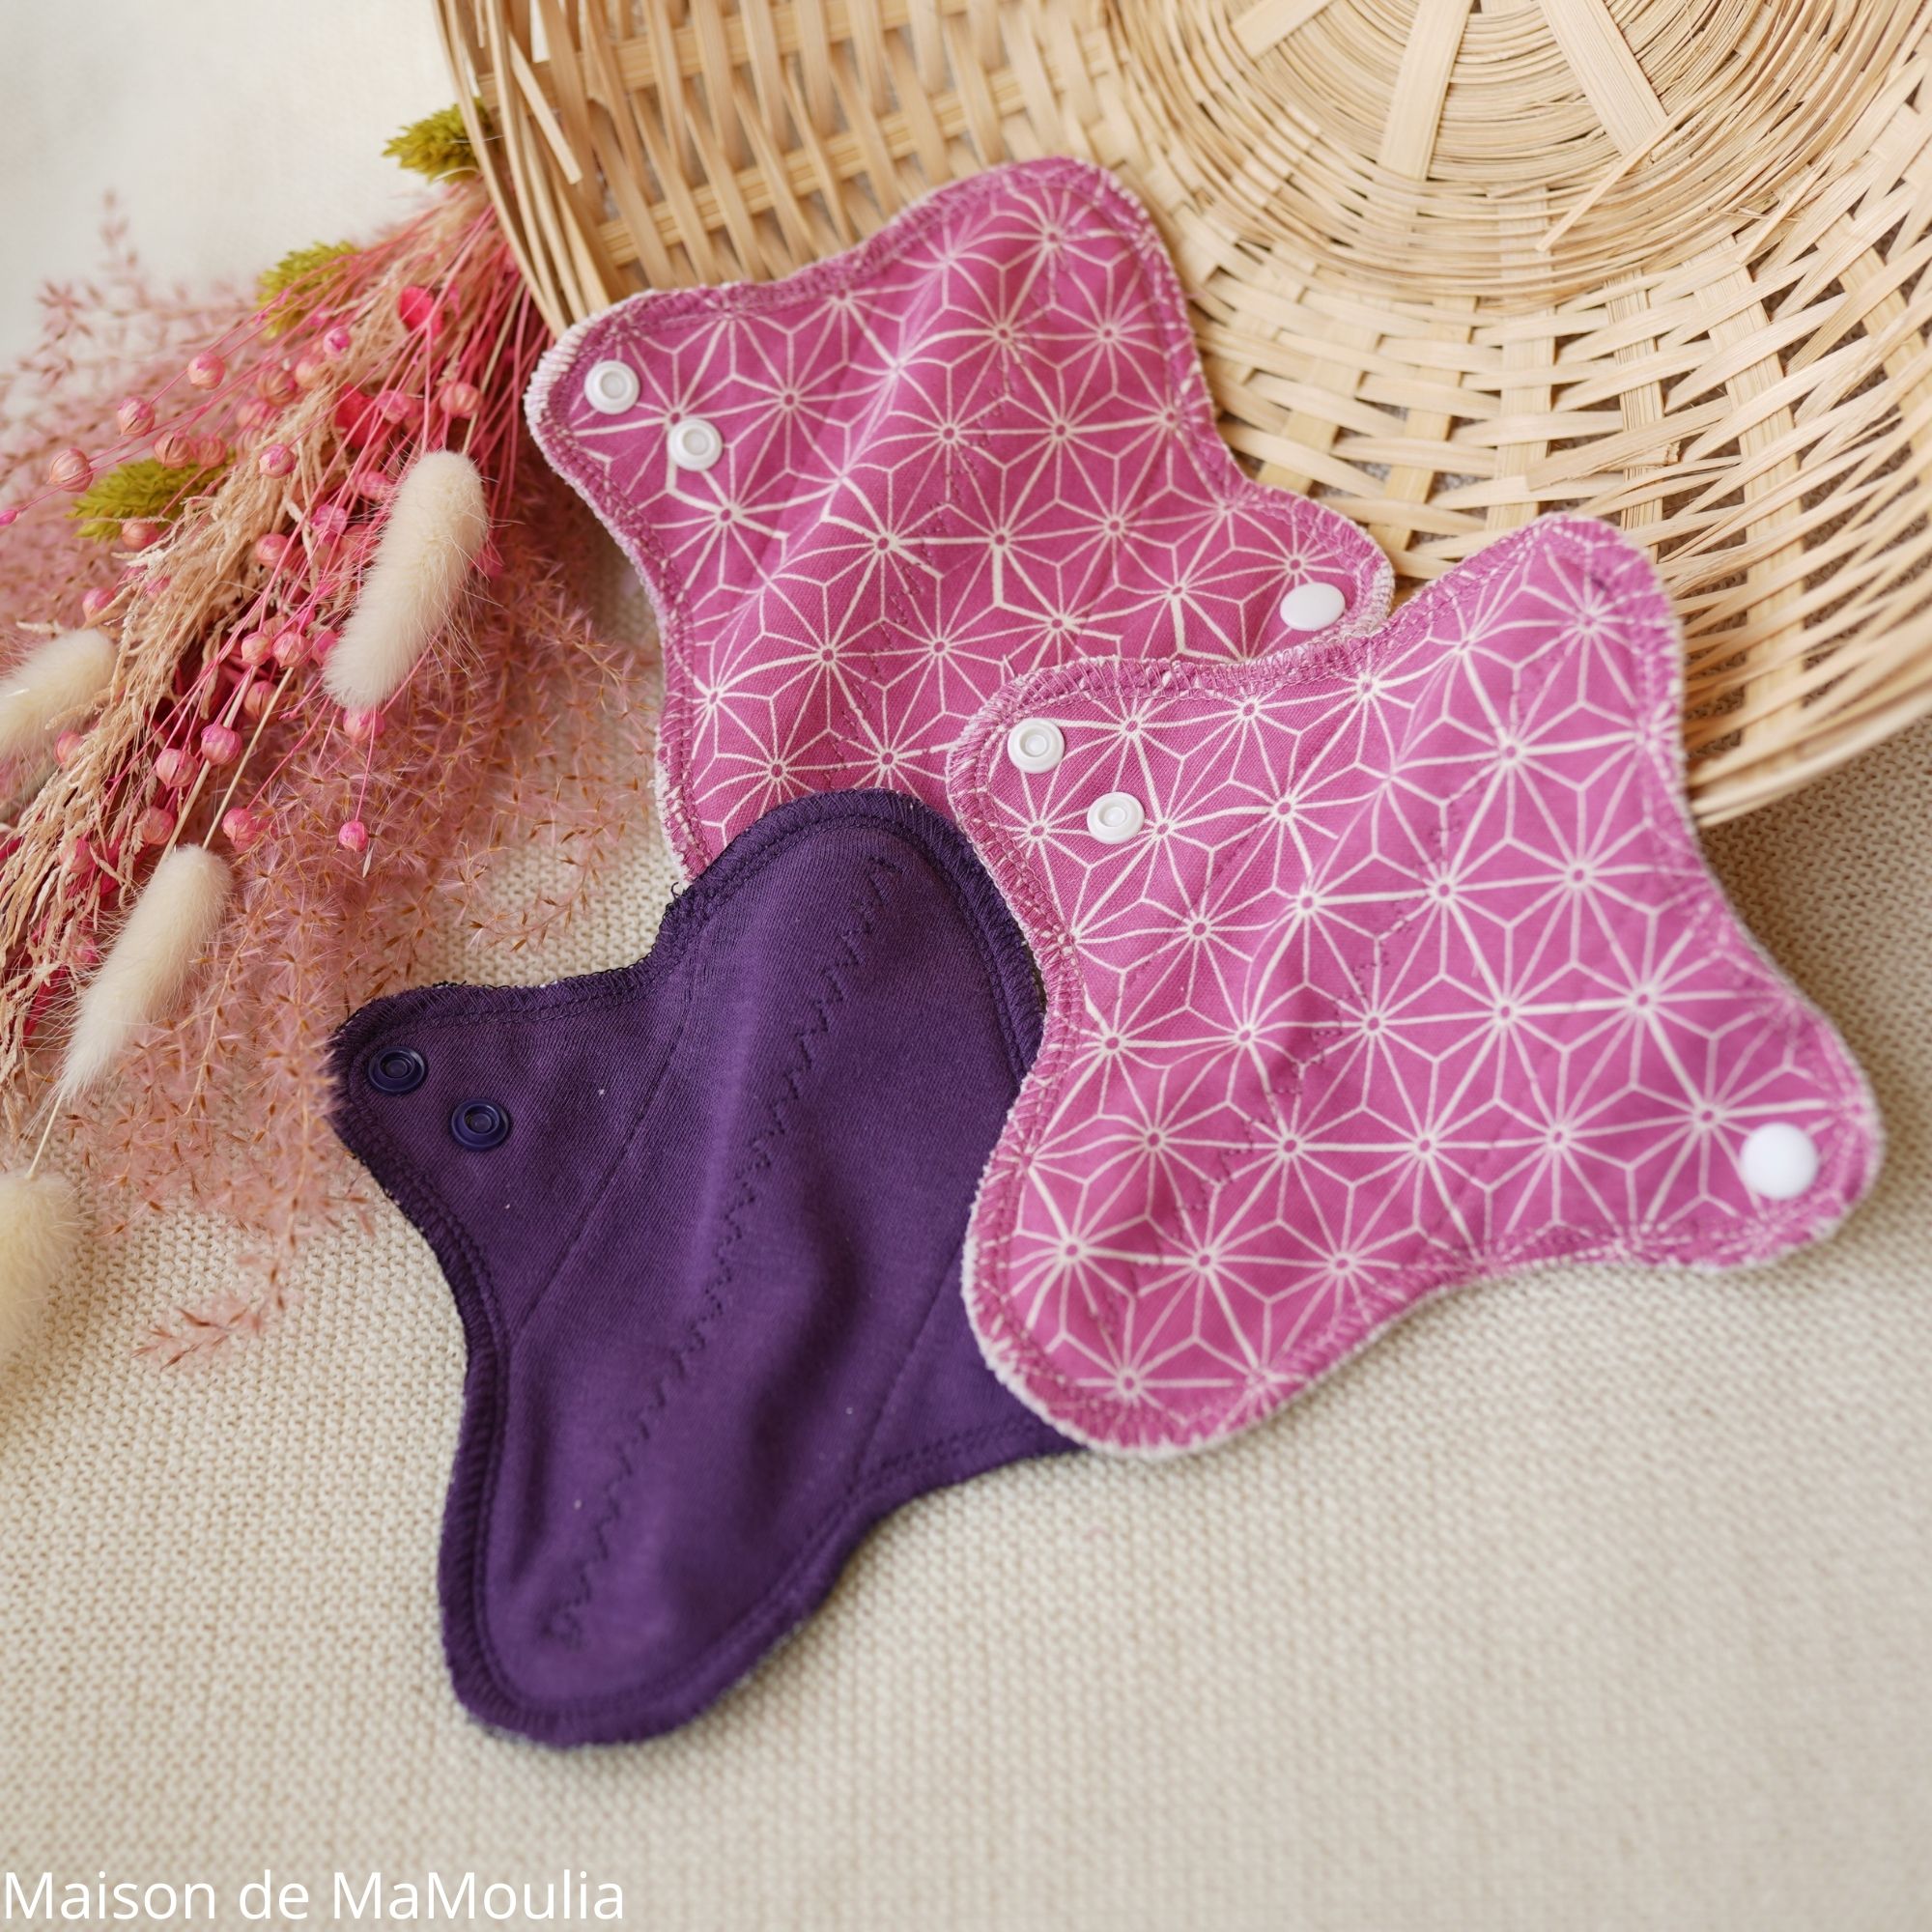 serviette-hygienique-lavable-mamidea-maison-de-mamoulia-mini-reach-rose-violet-japain-star-lot